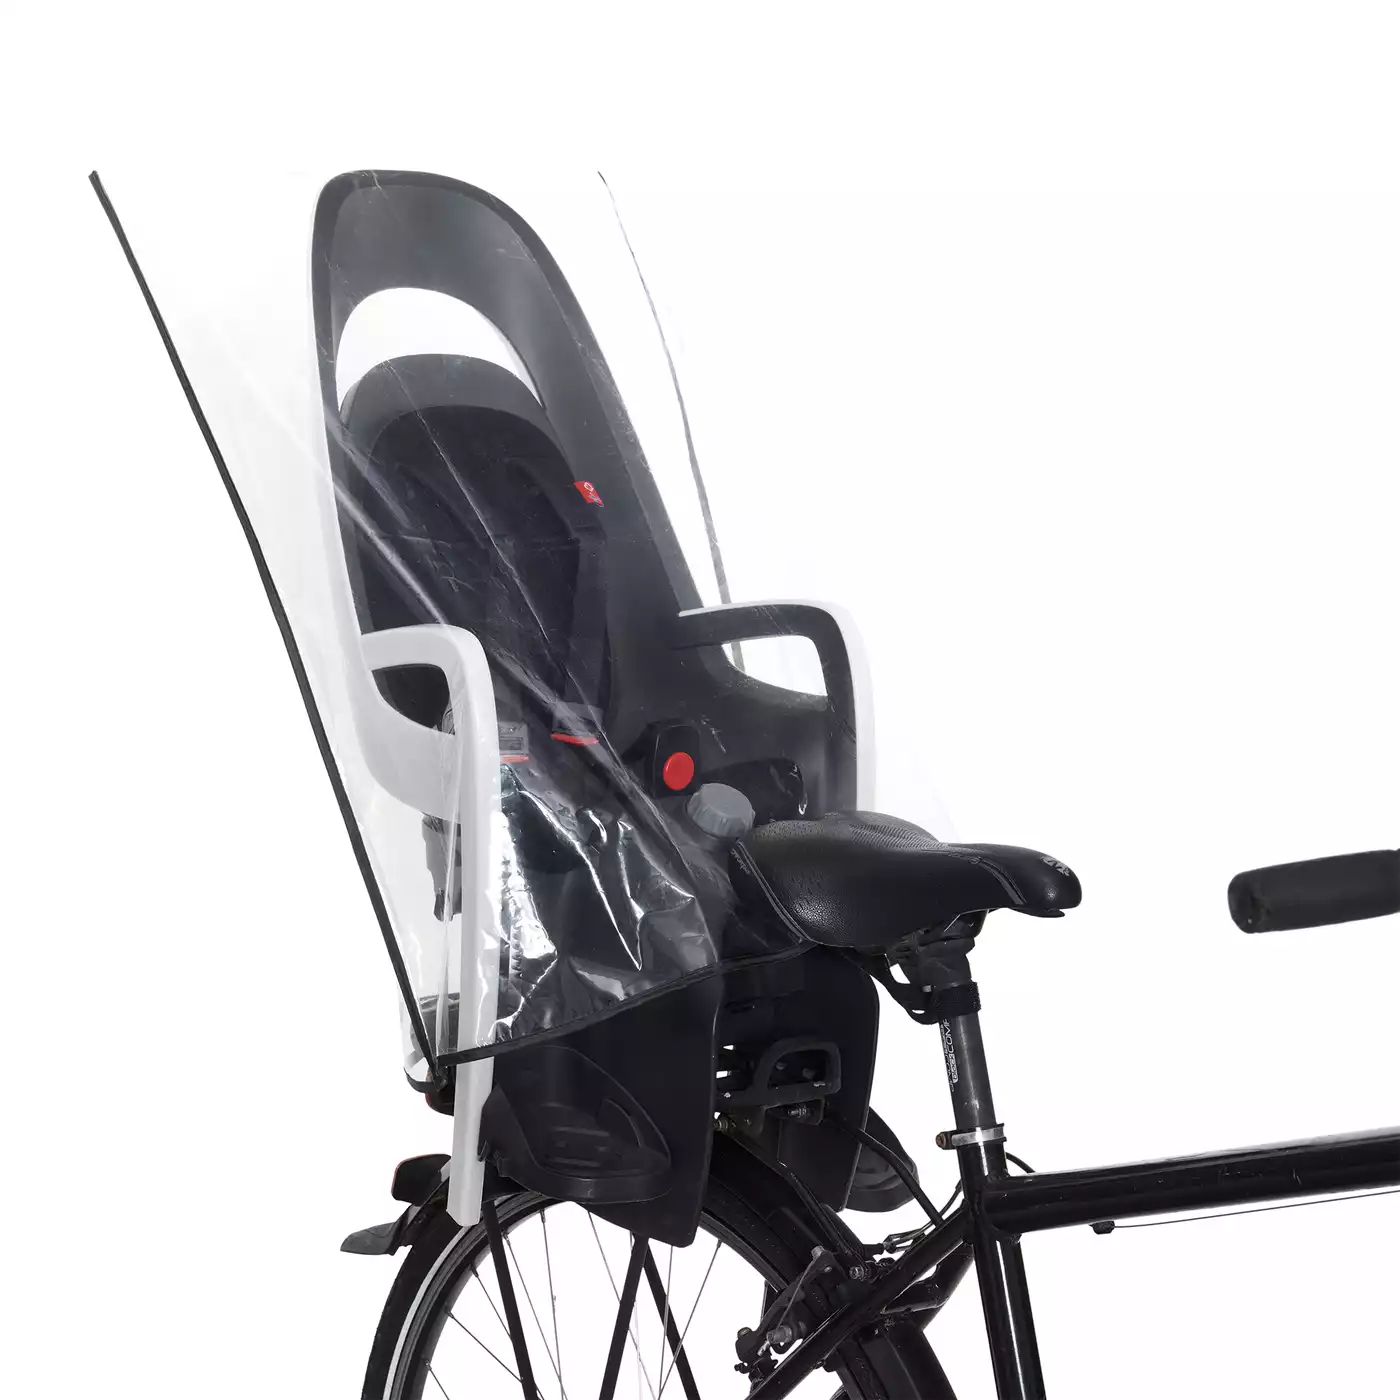 T-PRO Regenschutz (Basis) für Fahrradkindersitz - Farbe: Schwarz